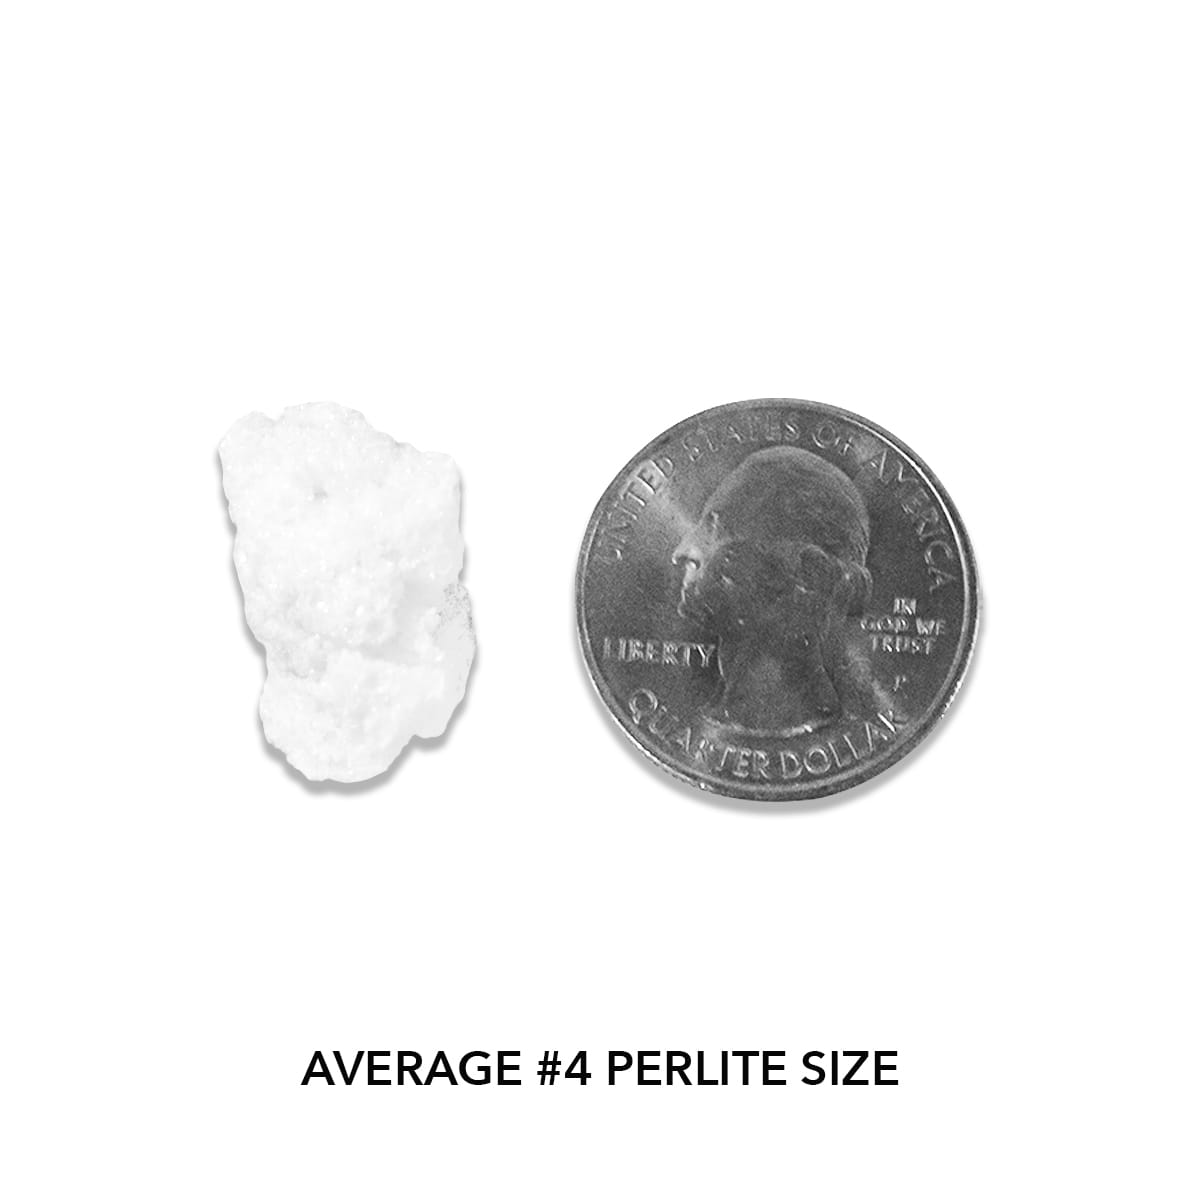 Pahroc Perlite #4 - Actual Size